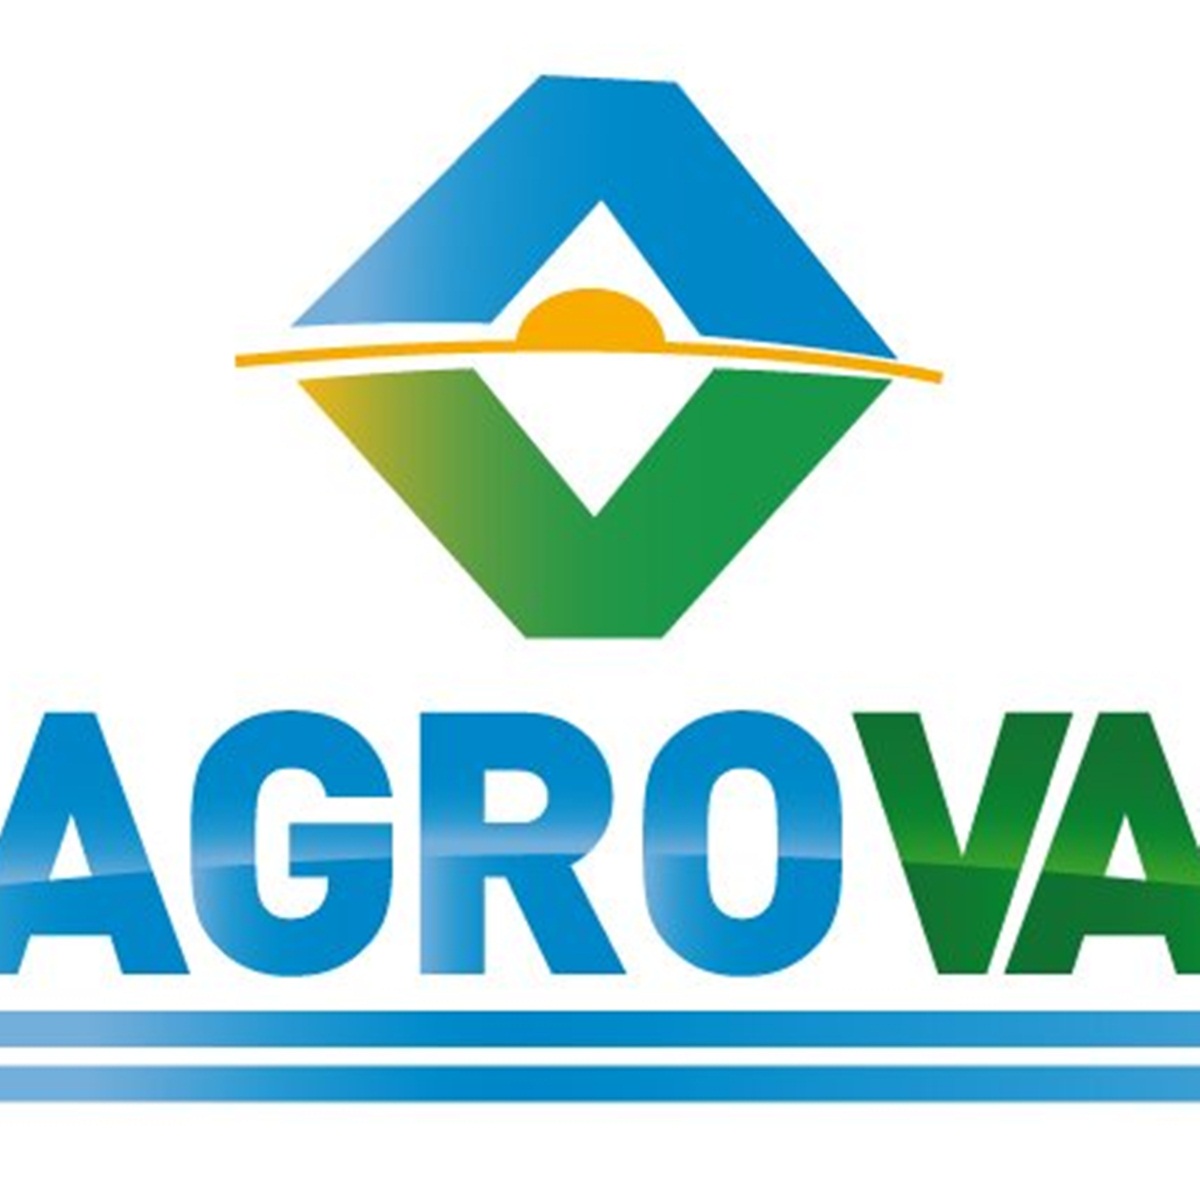 #Podcast Agro VA 24.07: #ExpoRural18 Ignacio Iriarte y @raulmmilano, director ejecutivo @rosgan_bcr